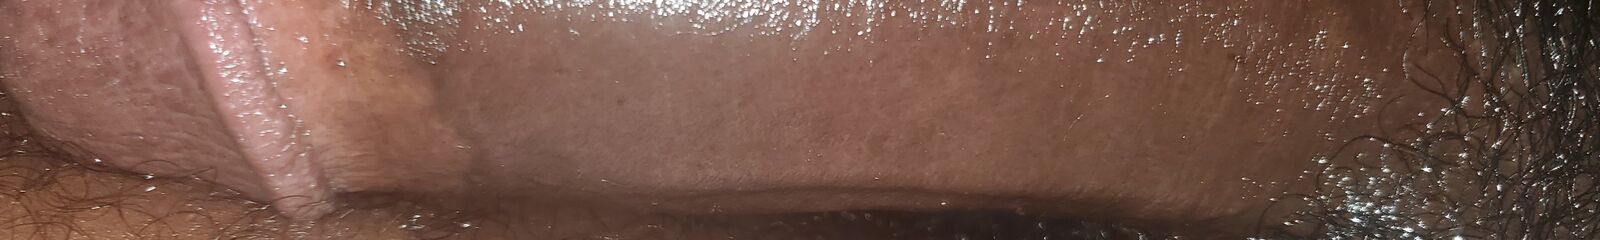 Chocolate thunder waterfall